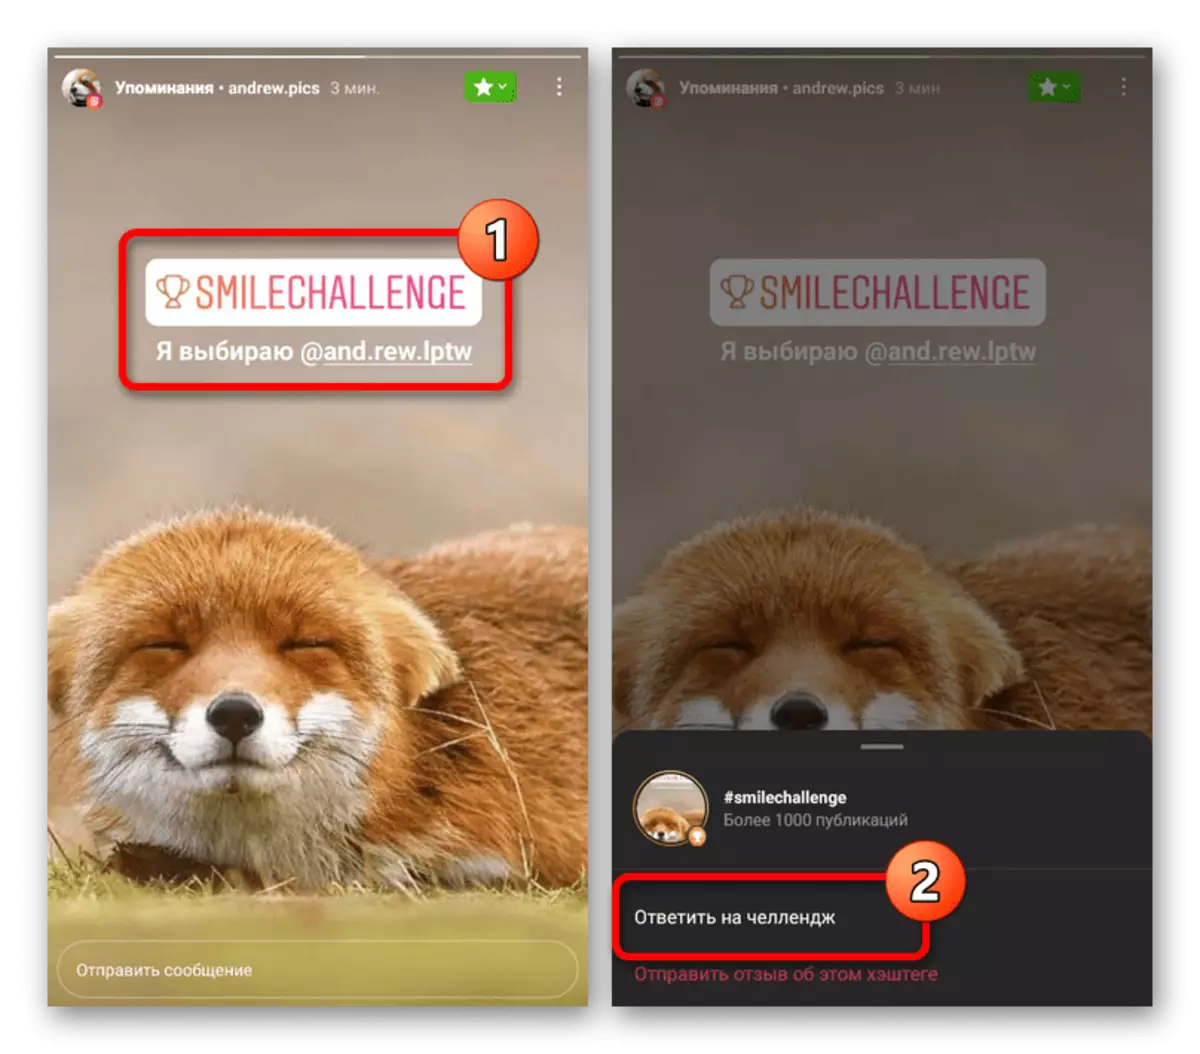 Mooglikheid om in reaksje te meitsjen op útdaging yn 'e mobile applikaasje Instagram